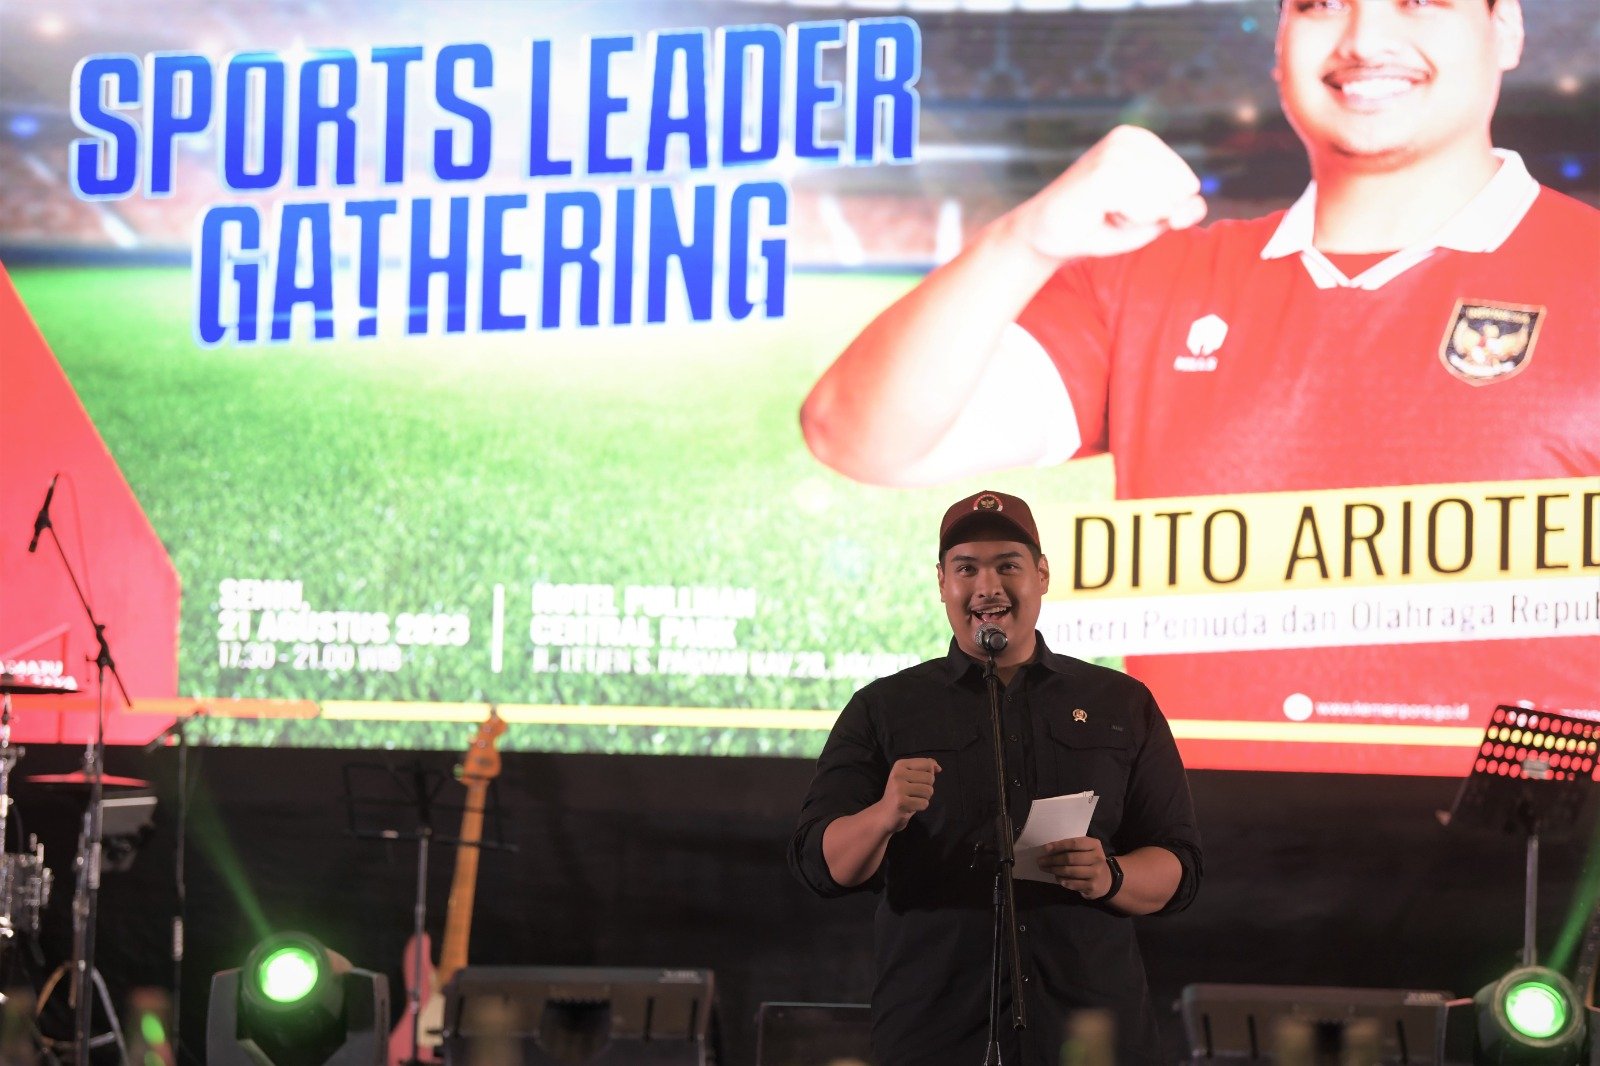 Menteri Pemuda dan Olahraga Republik  Indonesia (Menpora RI) Dito Ariotedjo (Kementerian Pemuda dan Olahraga)